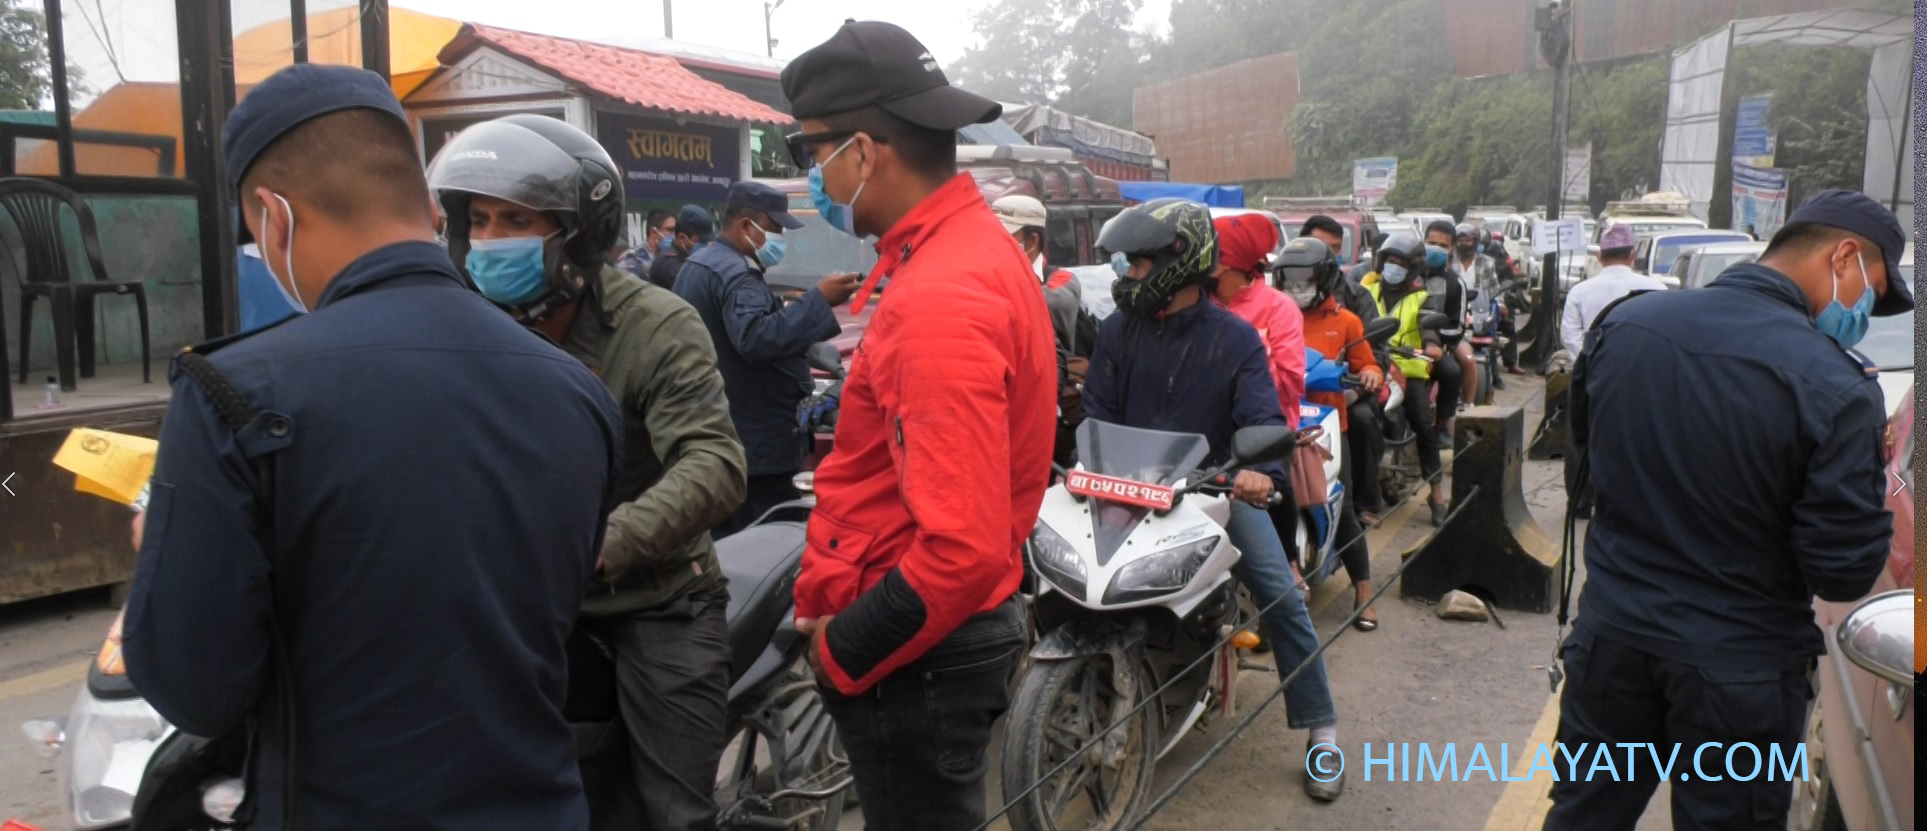 कोरोना संक्रमण बढिरहँदा तीन हप्तामा झण्डै चार लाख नागरिक काठमाडौं भित्रिए